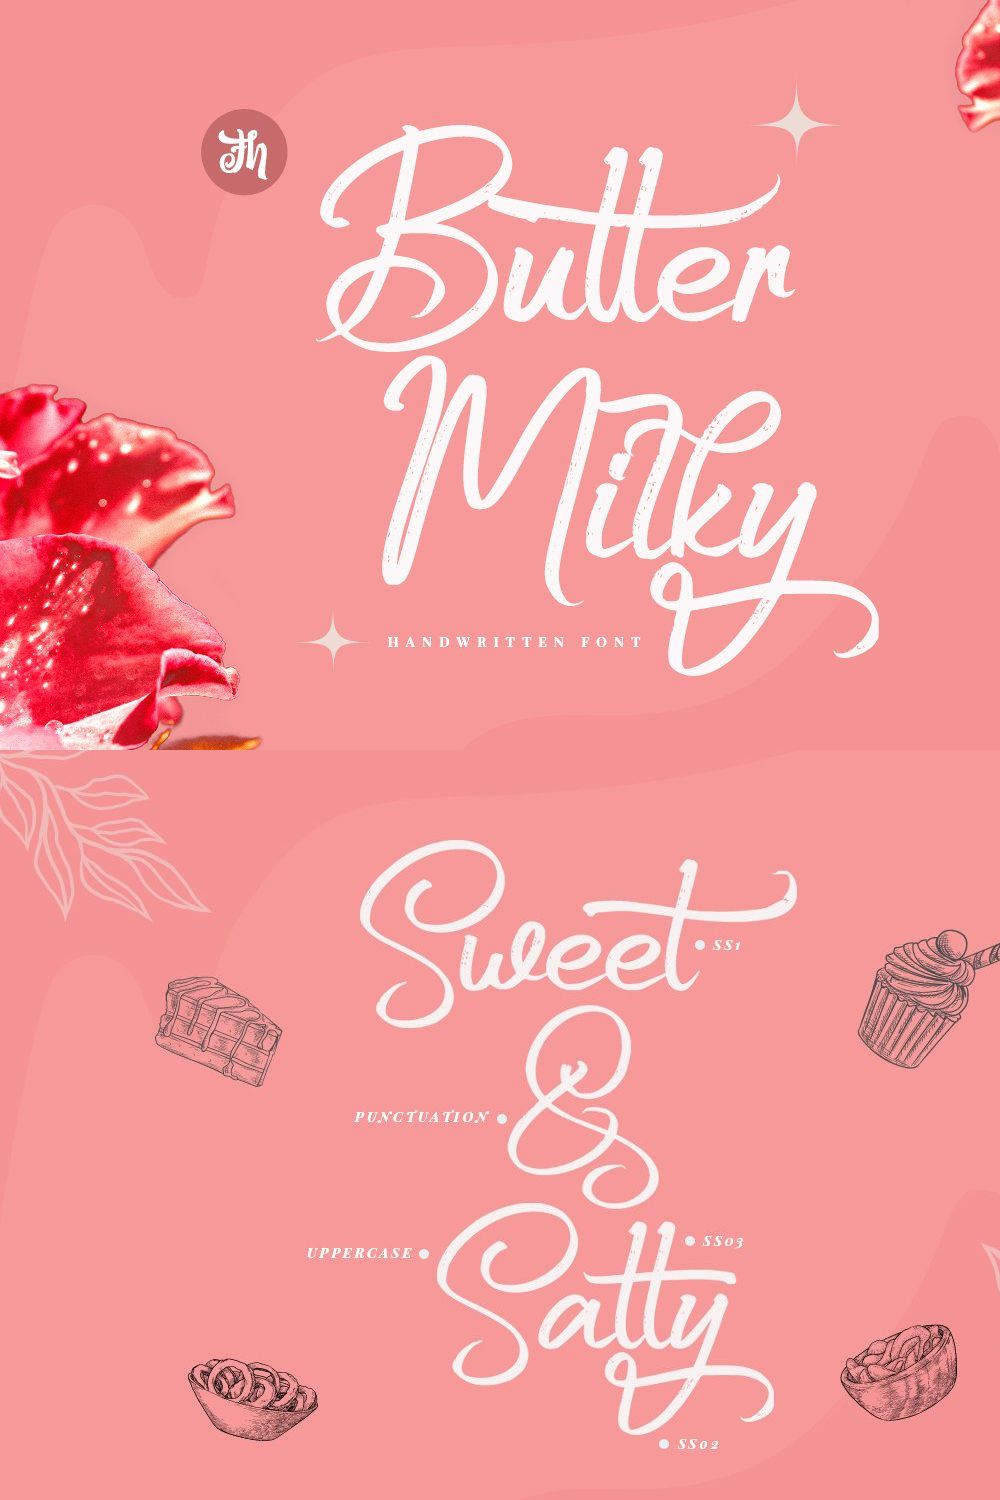 Butter Milky - Handwritten Font pinterest preview image.